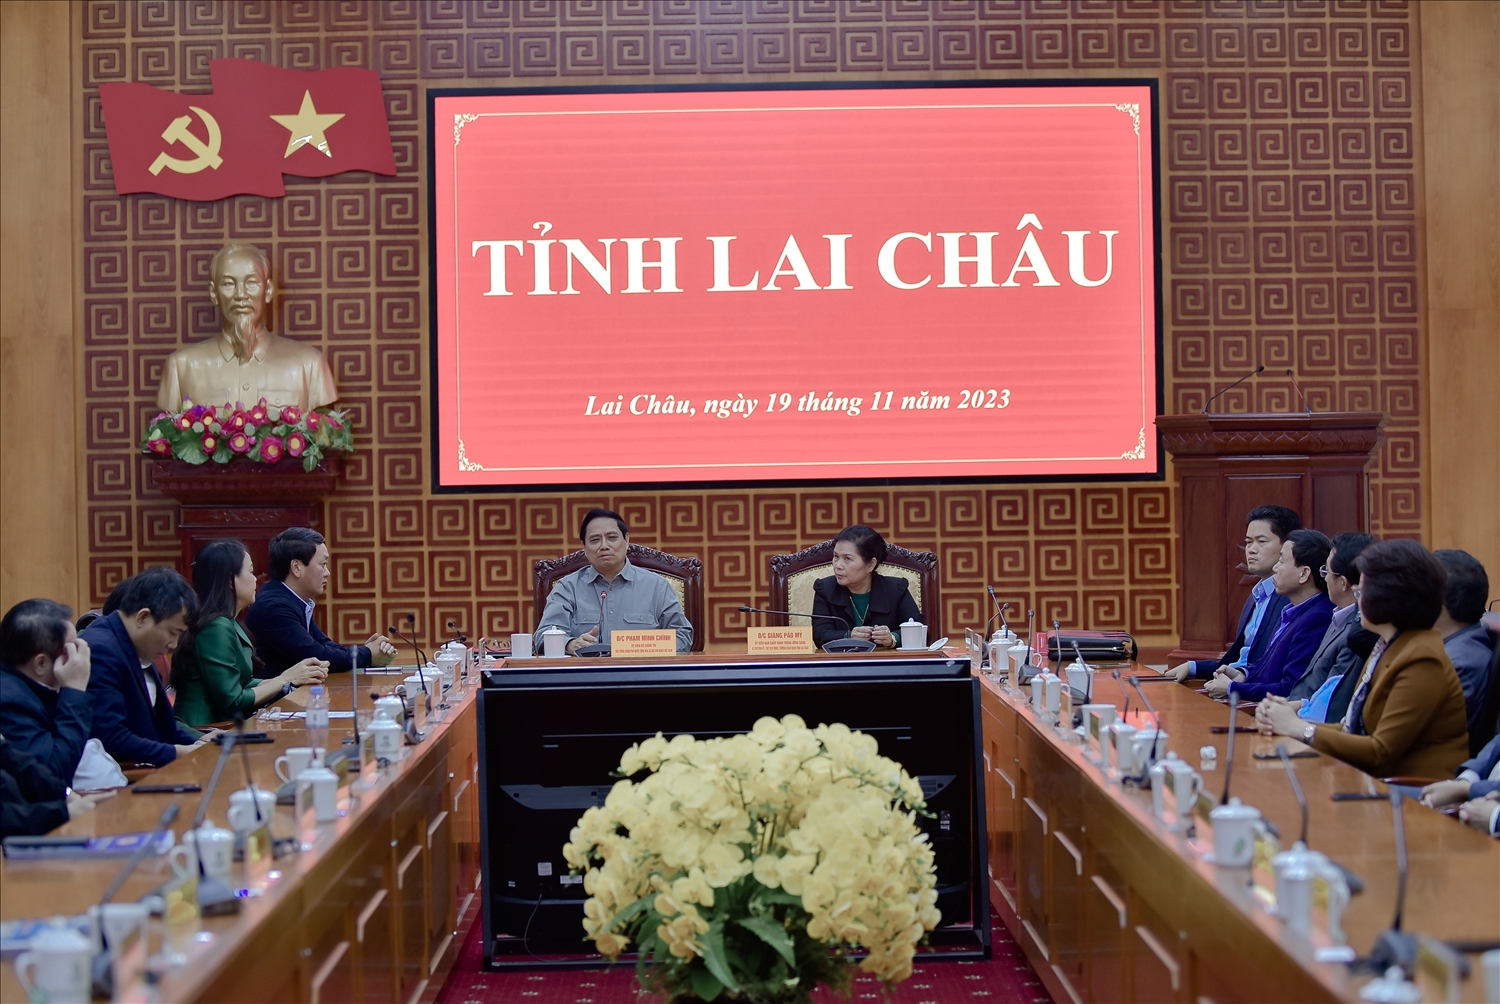 Thủ tướng đề nghị Lai Châu cần gắn phát triển du lịch với bảo tồn bản sắc văn hóa dân tộc 